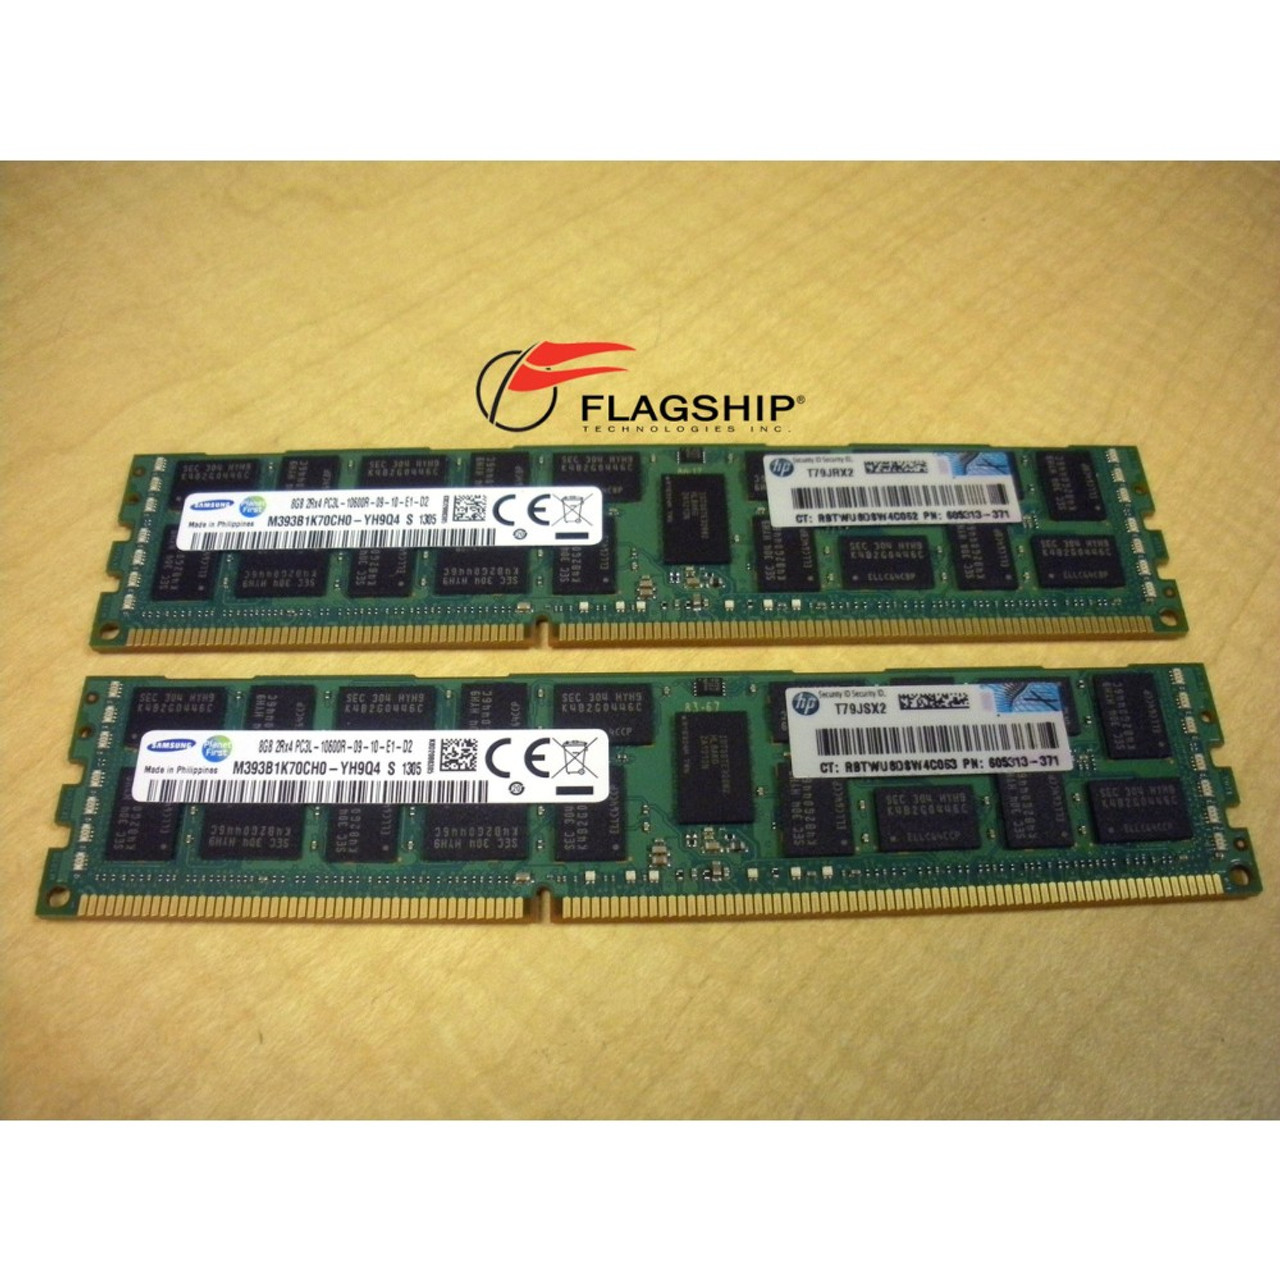 HP Integrity rx2800 i4 AT109A 16GB (2x 8GB) Memory Kit PC3L-10600  605313-371 647650-371